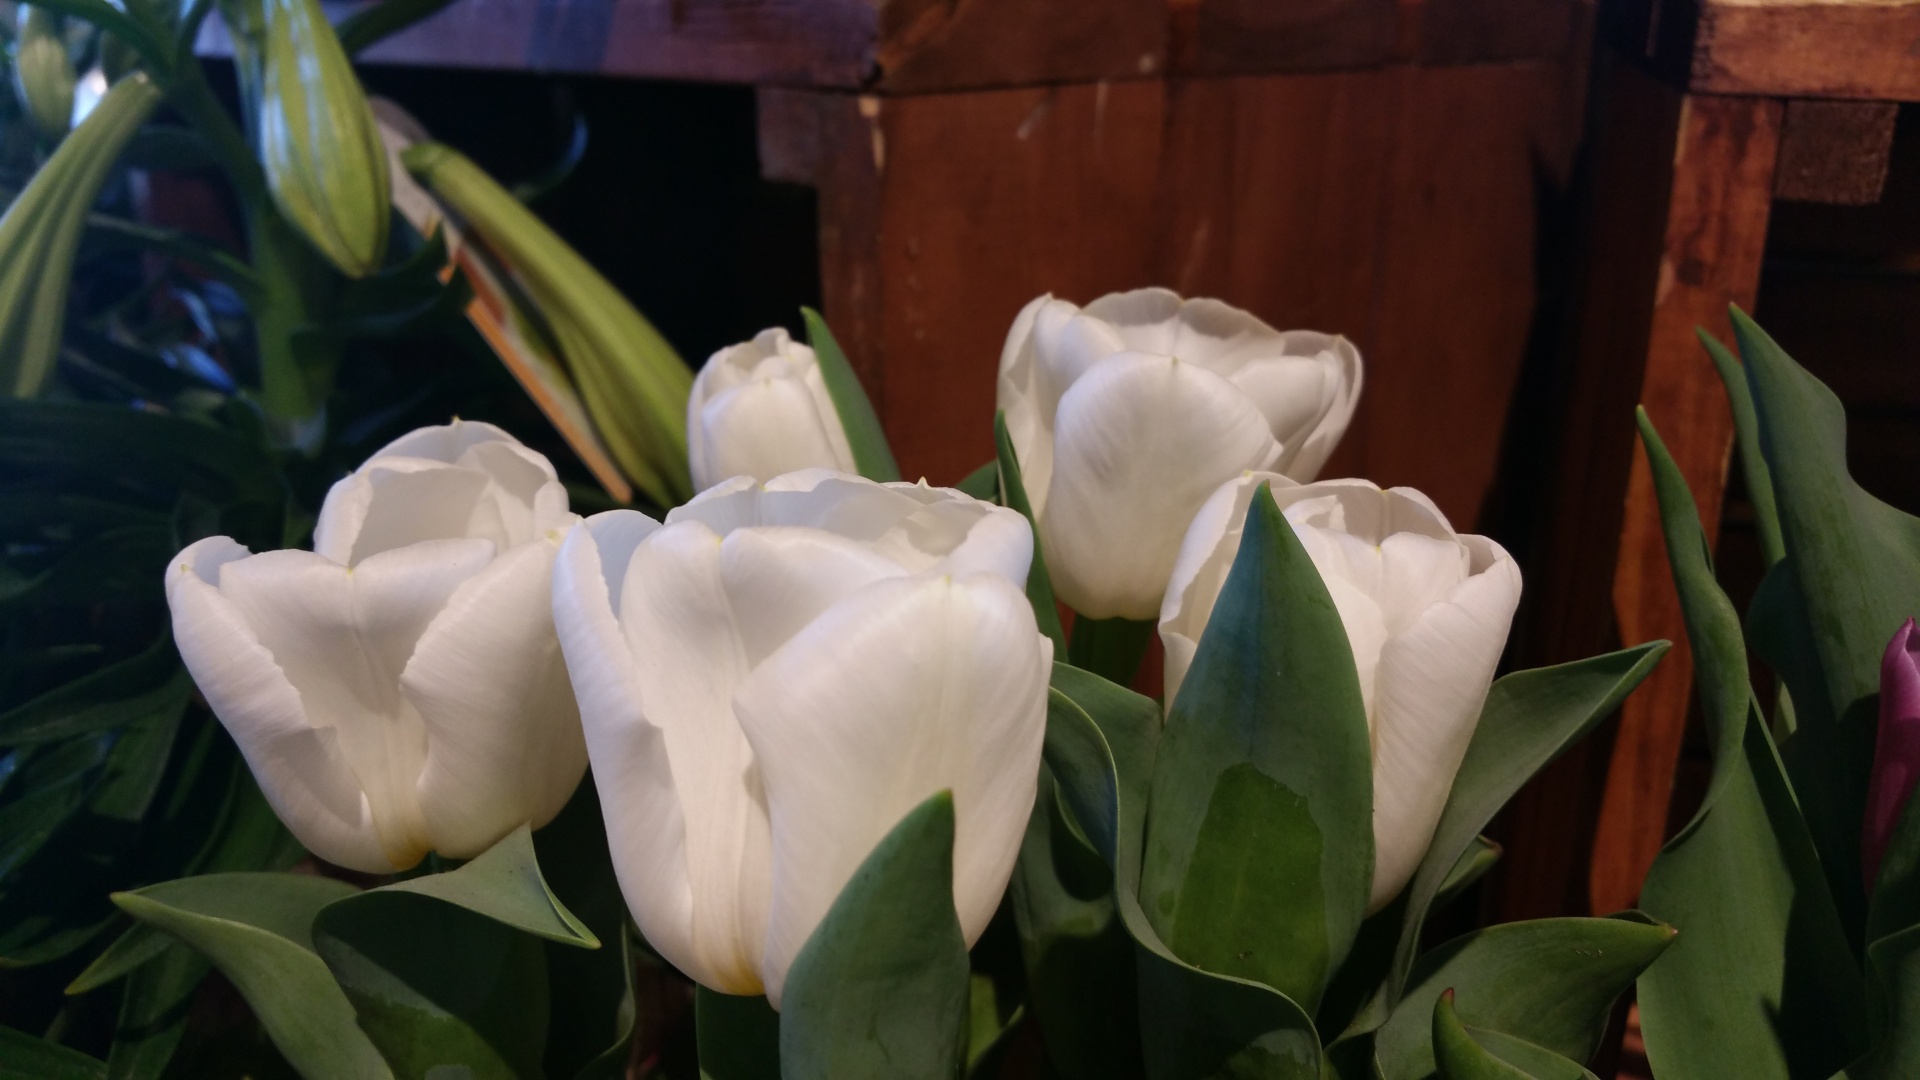 Los tulipanes blancos